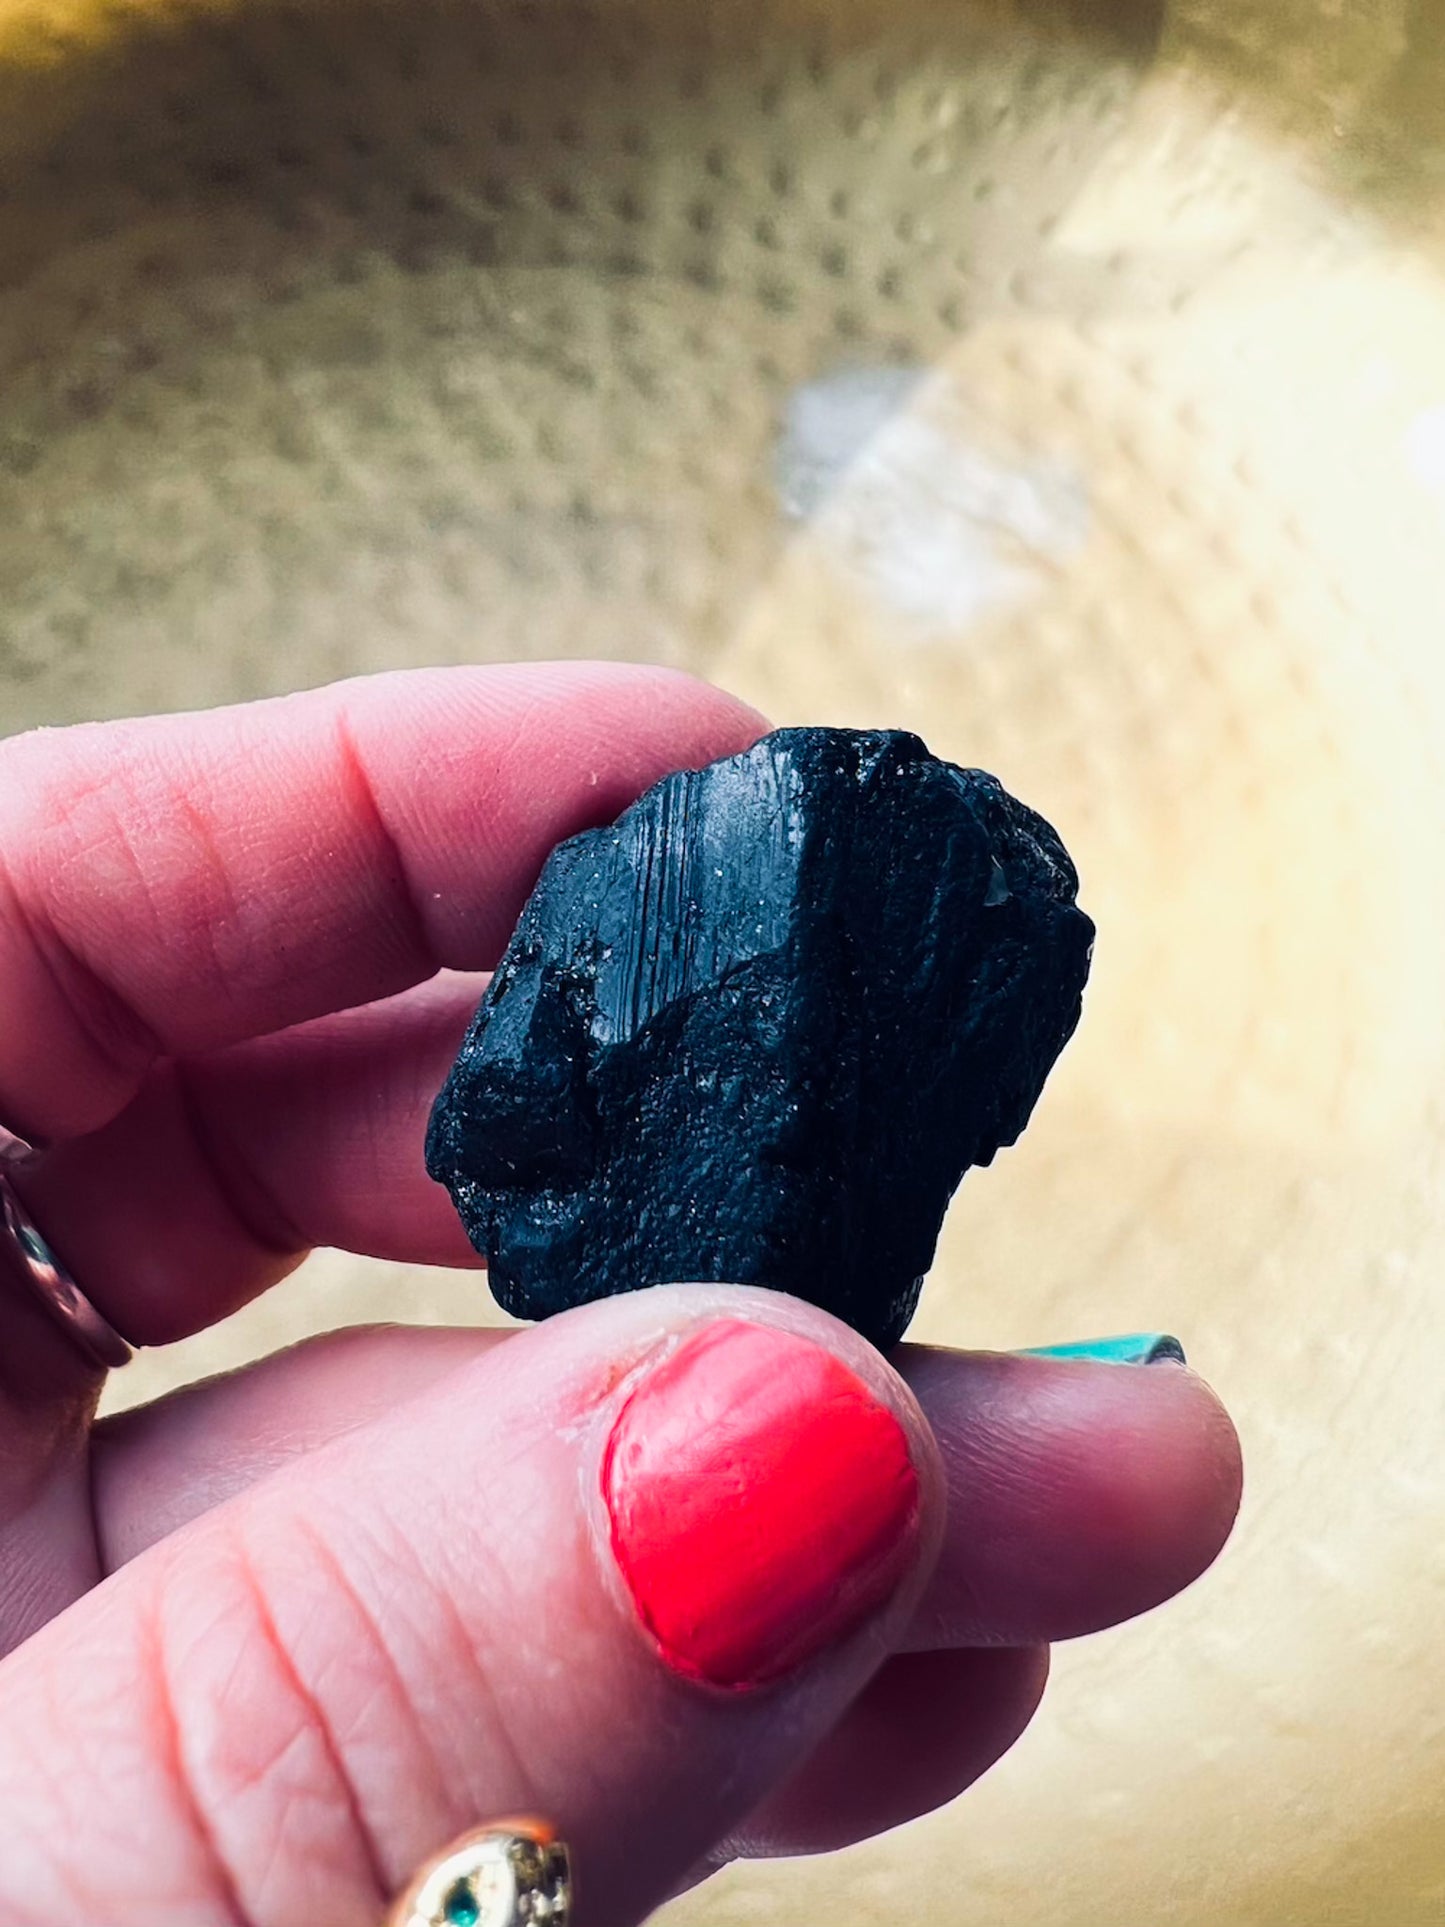 BUNDLE: Raw Labradorite, Black Tourmaline & Pyrite Cube